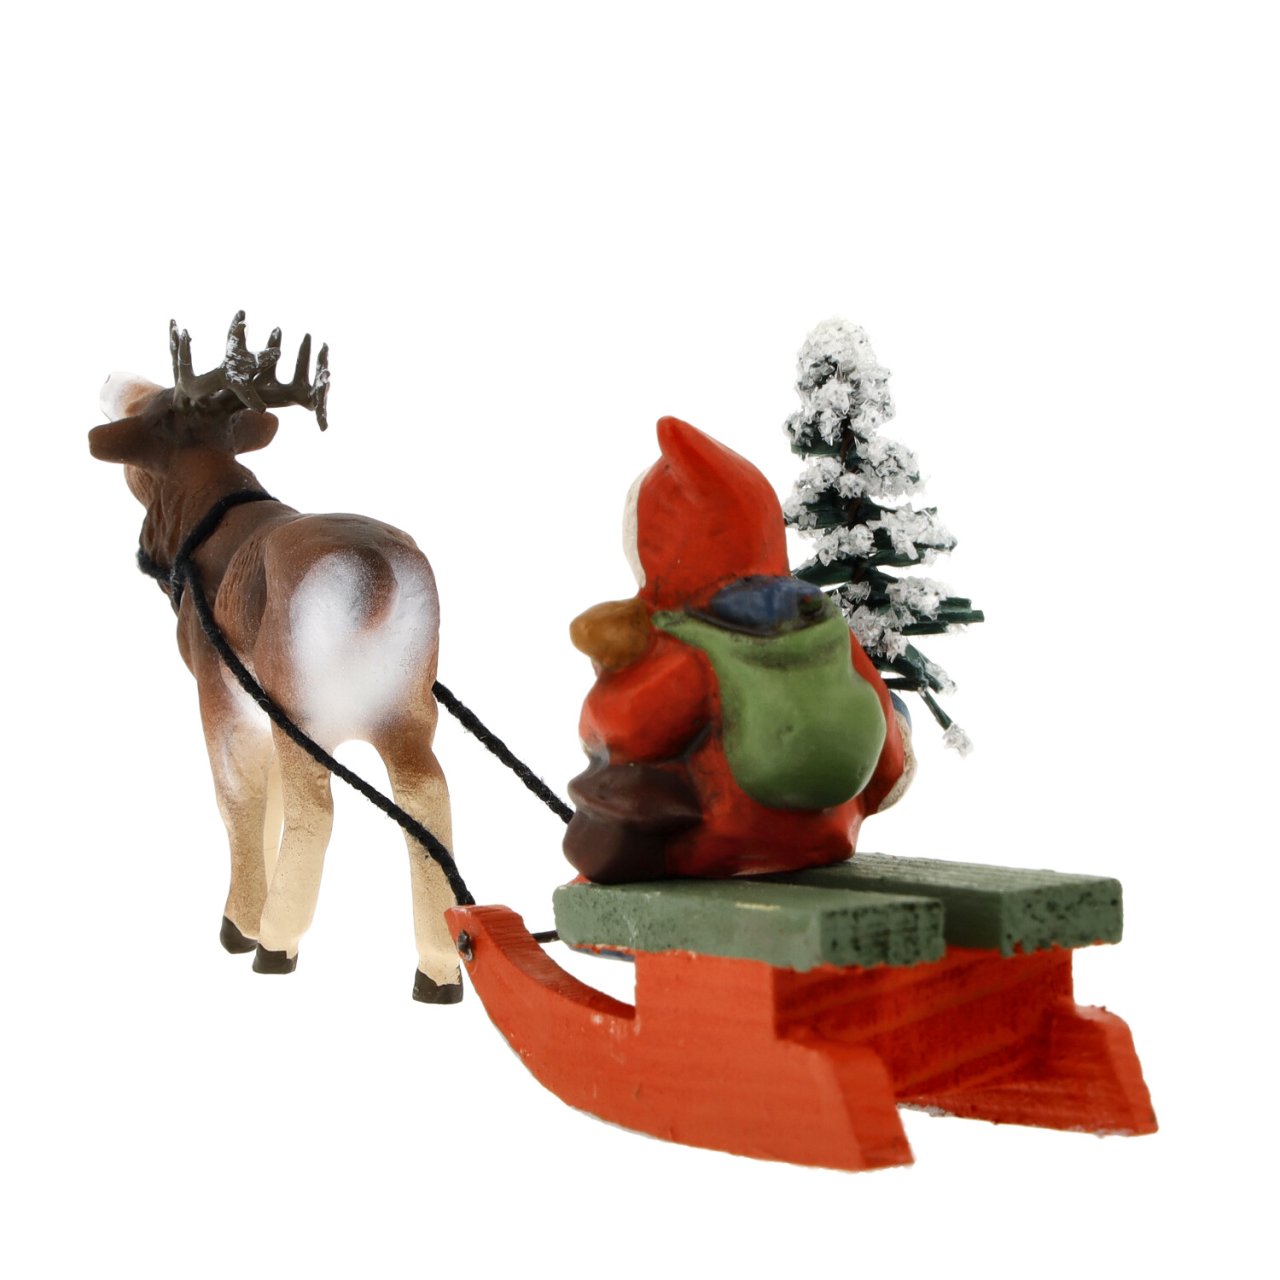 Miniature Santa and Reindeer Figurine by Marolin Manufaktur